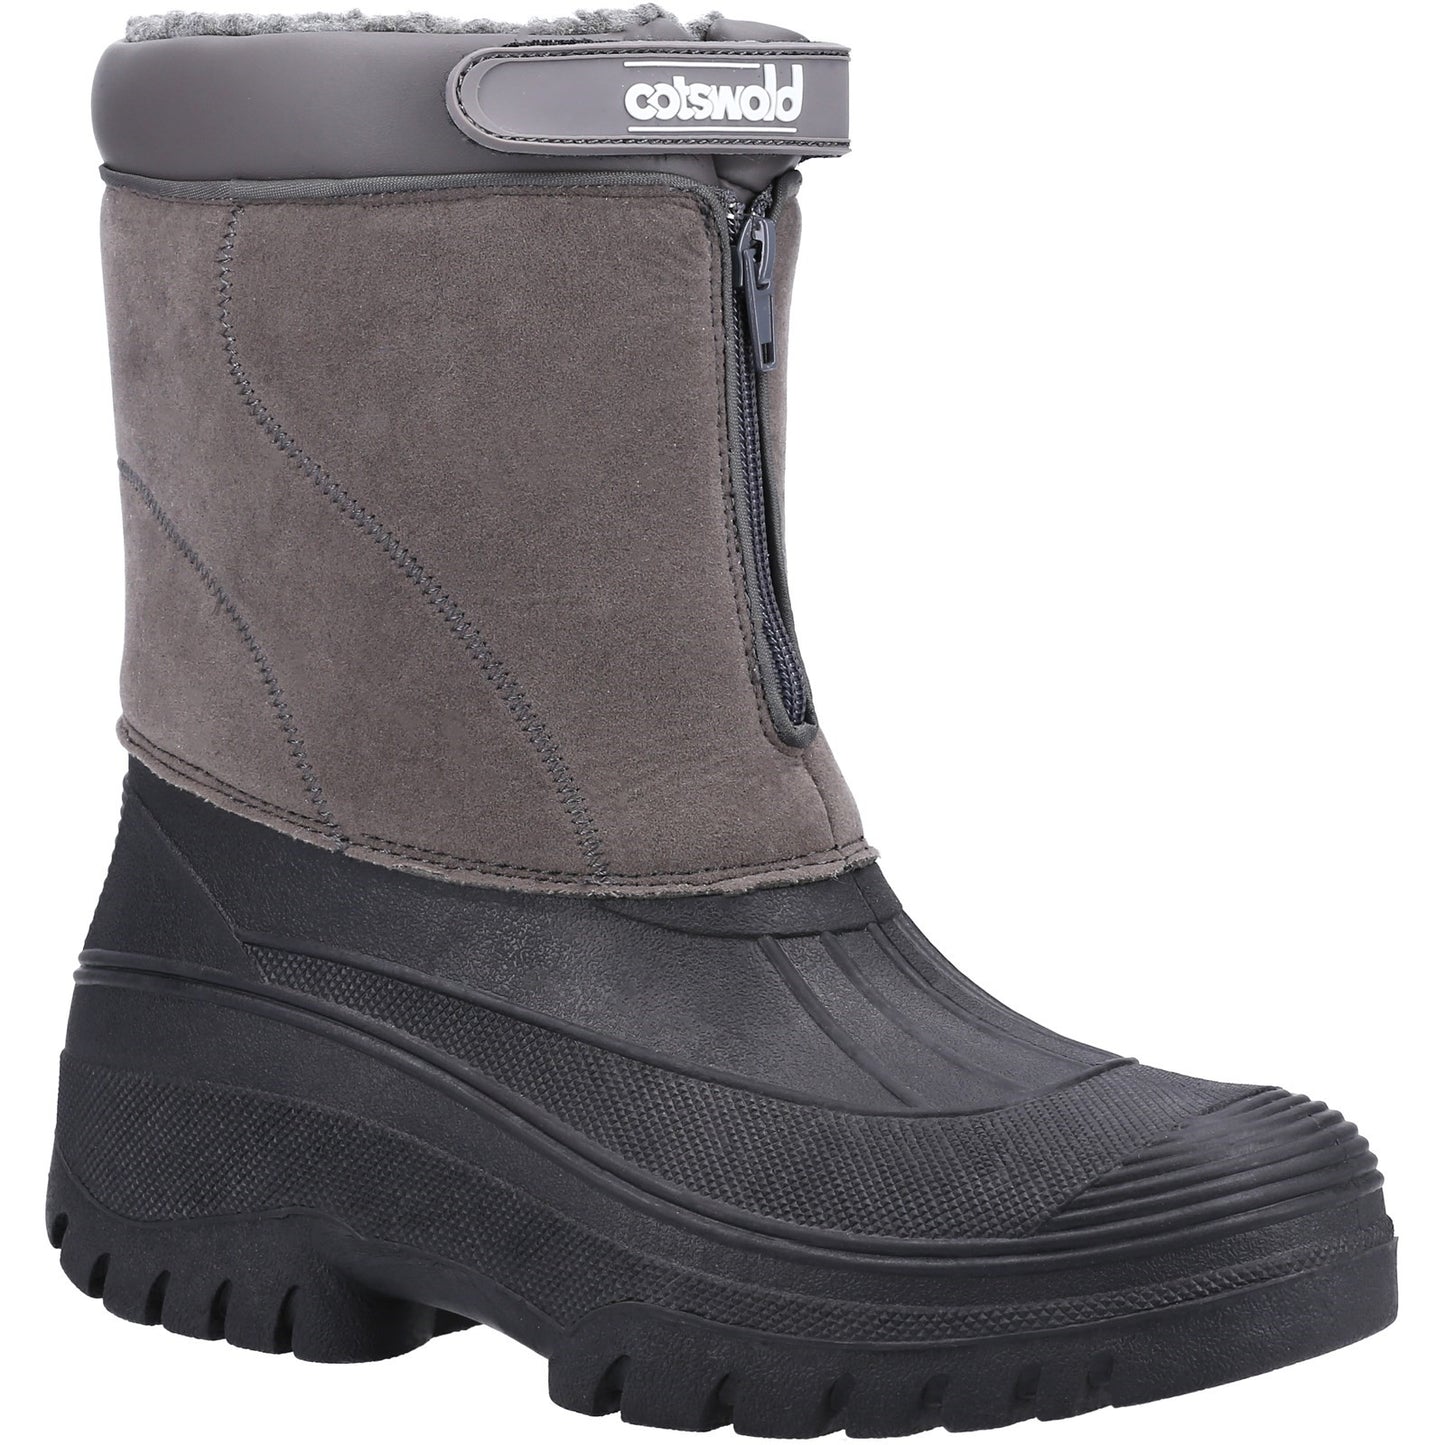 Venture Waterproof Winter Boot, Cotswold